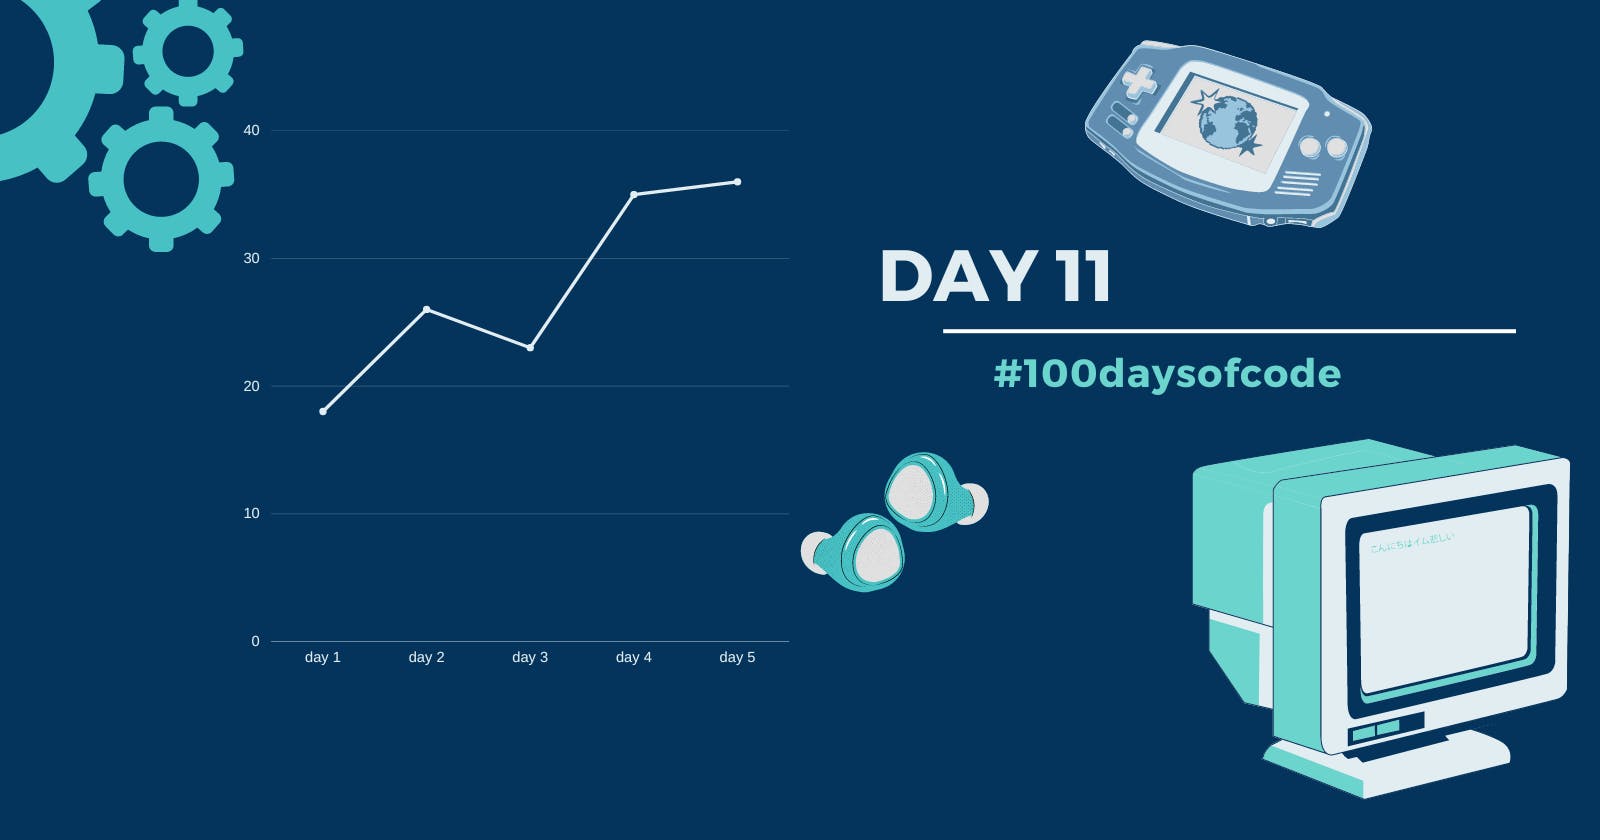 Day 11 in #100daysofcode challenge